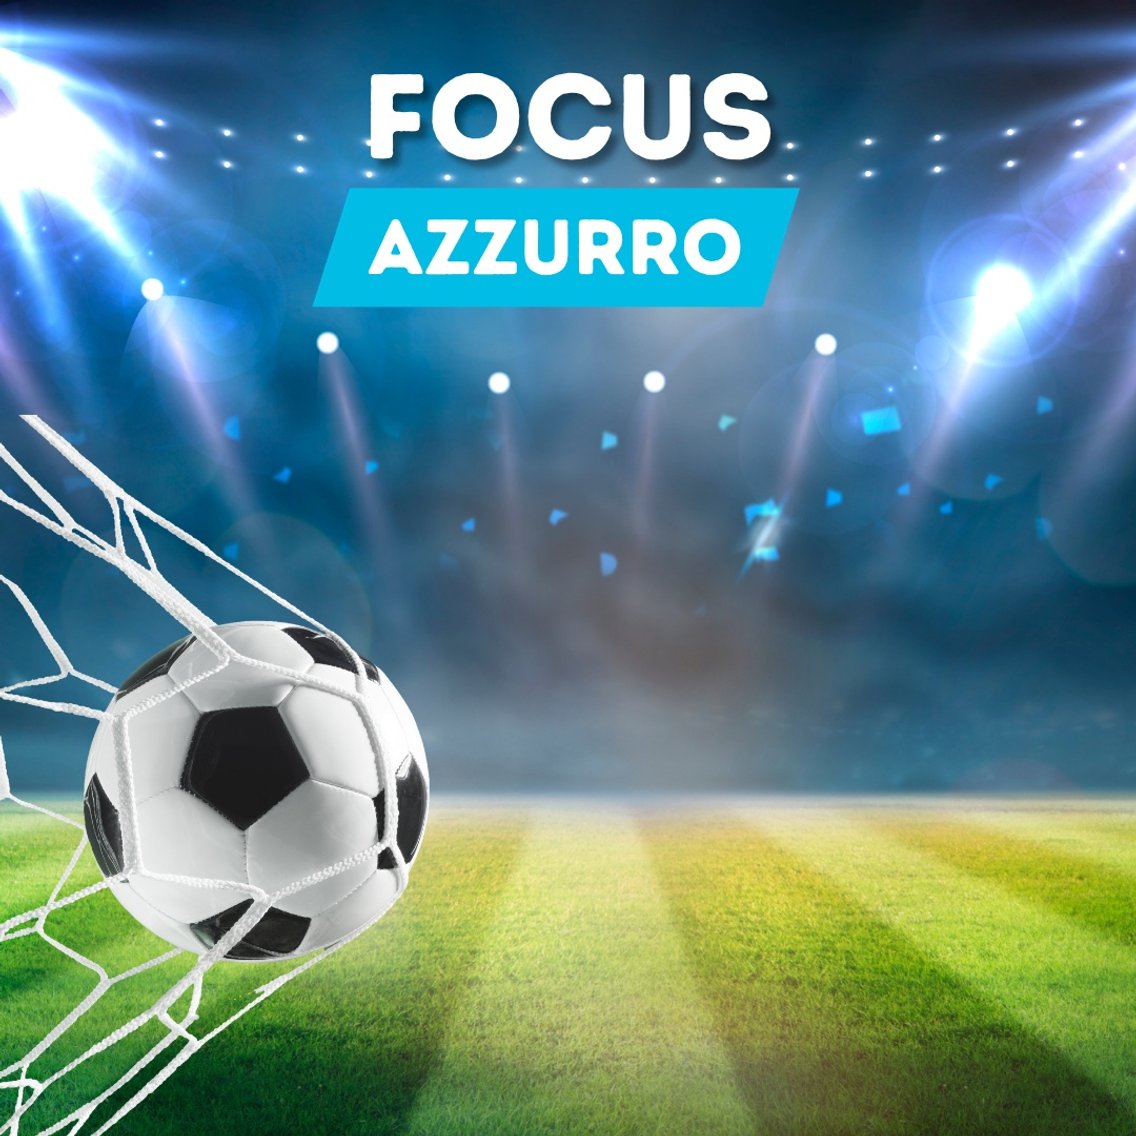 Focus Azzurro - Cover Image